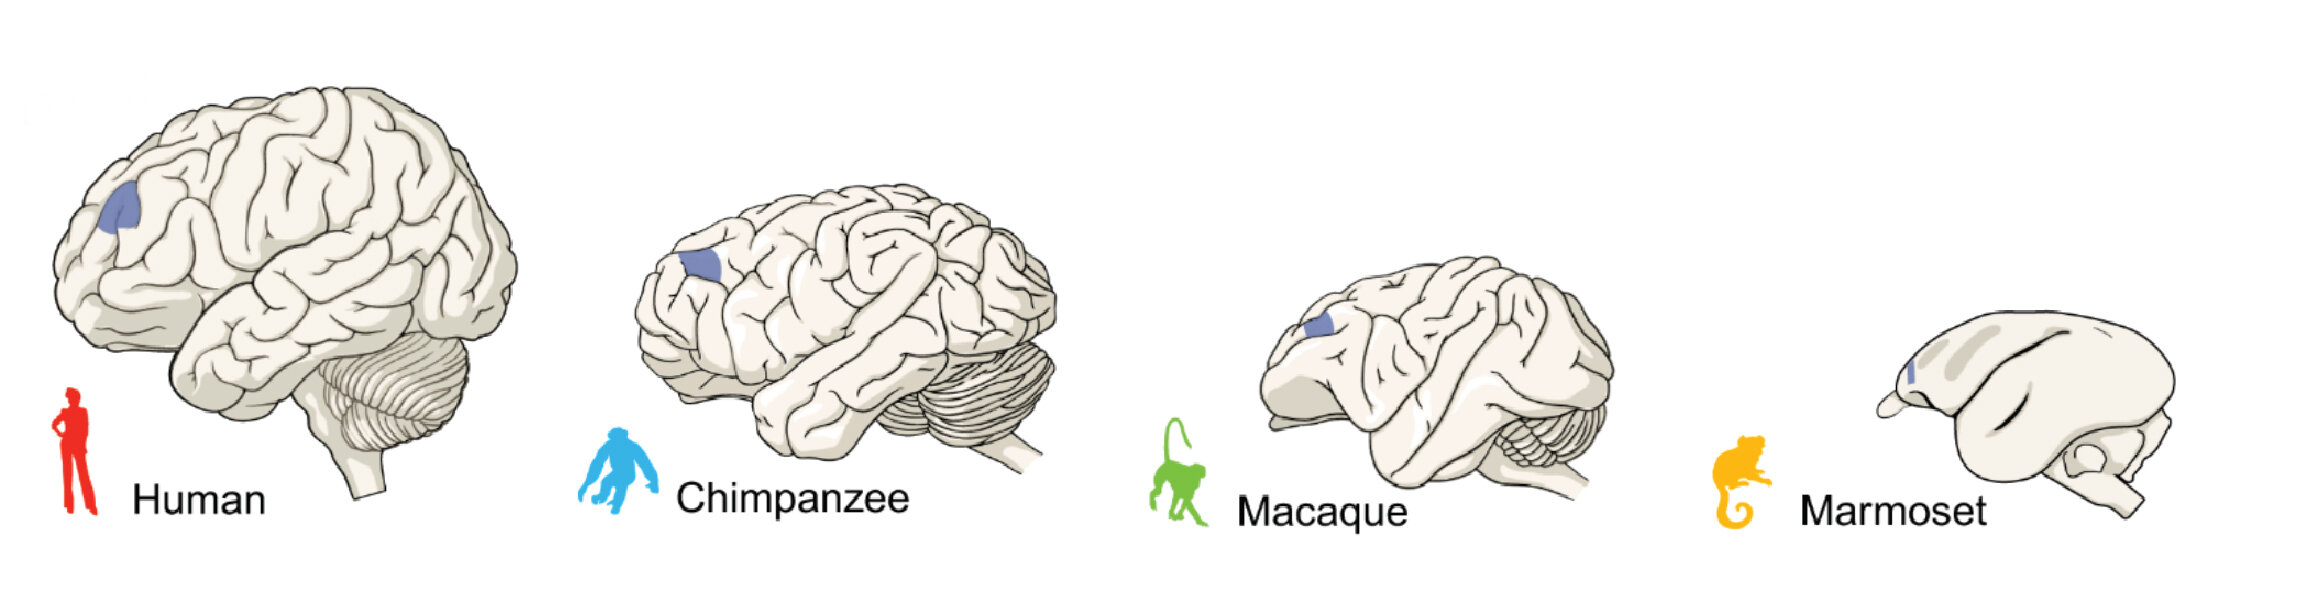 Photo of L’étude montre que les différences entre les cerveaux des primates – humains, singes et singes – sont petites mais significatives